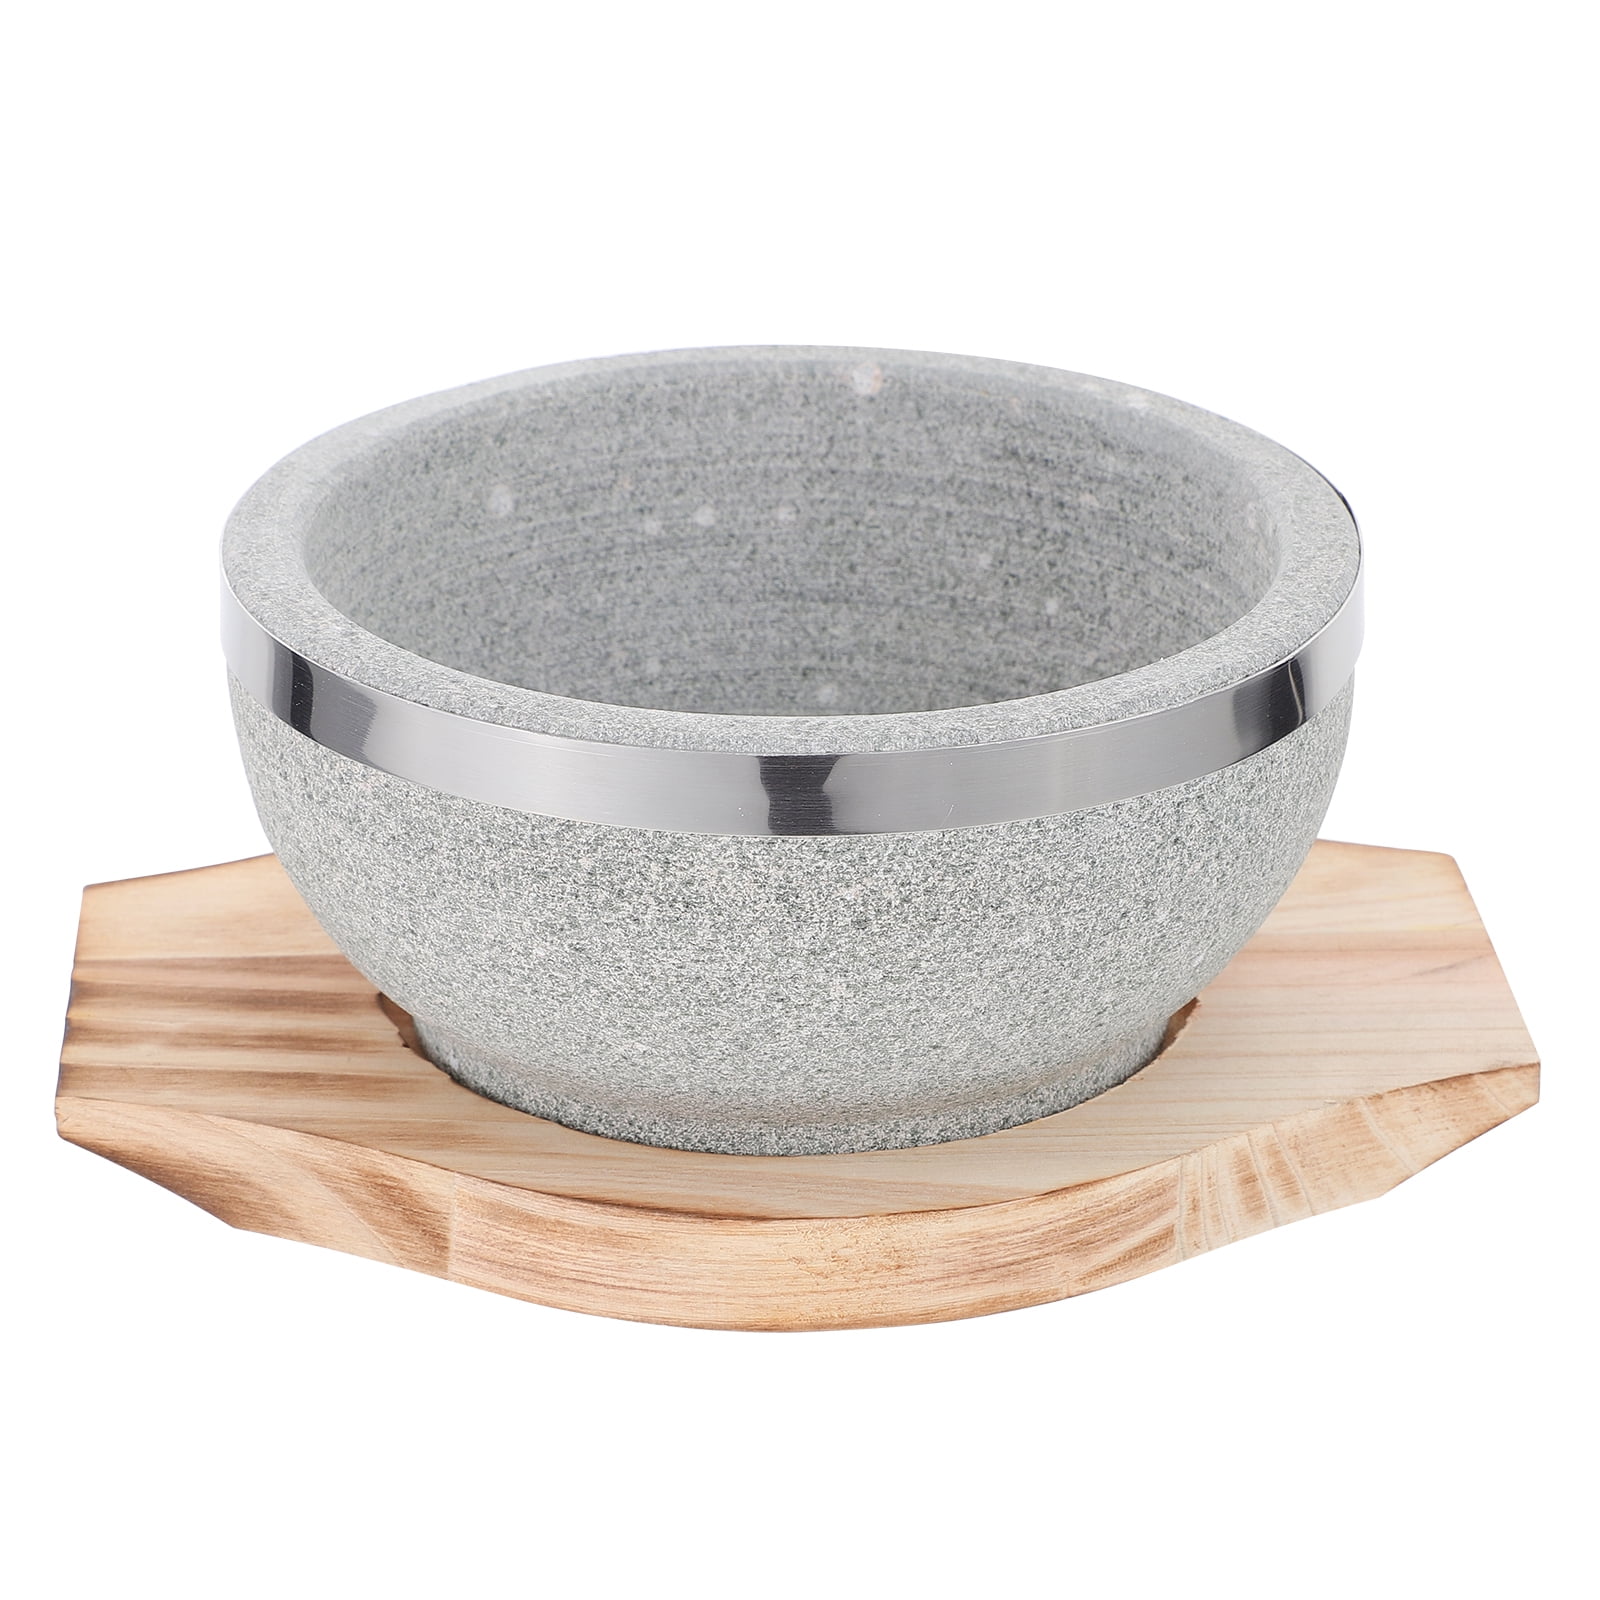 Frcolor Bowl Korean Stone Pot Bibimbap Dolsot Soup Stewfor Hot Base Cookware Ceramic Bibimbap Bowlsrice Donabestyle Noddle, Size: 2.56 x 5.51 x 5.51